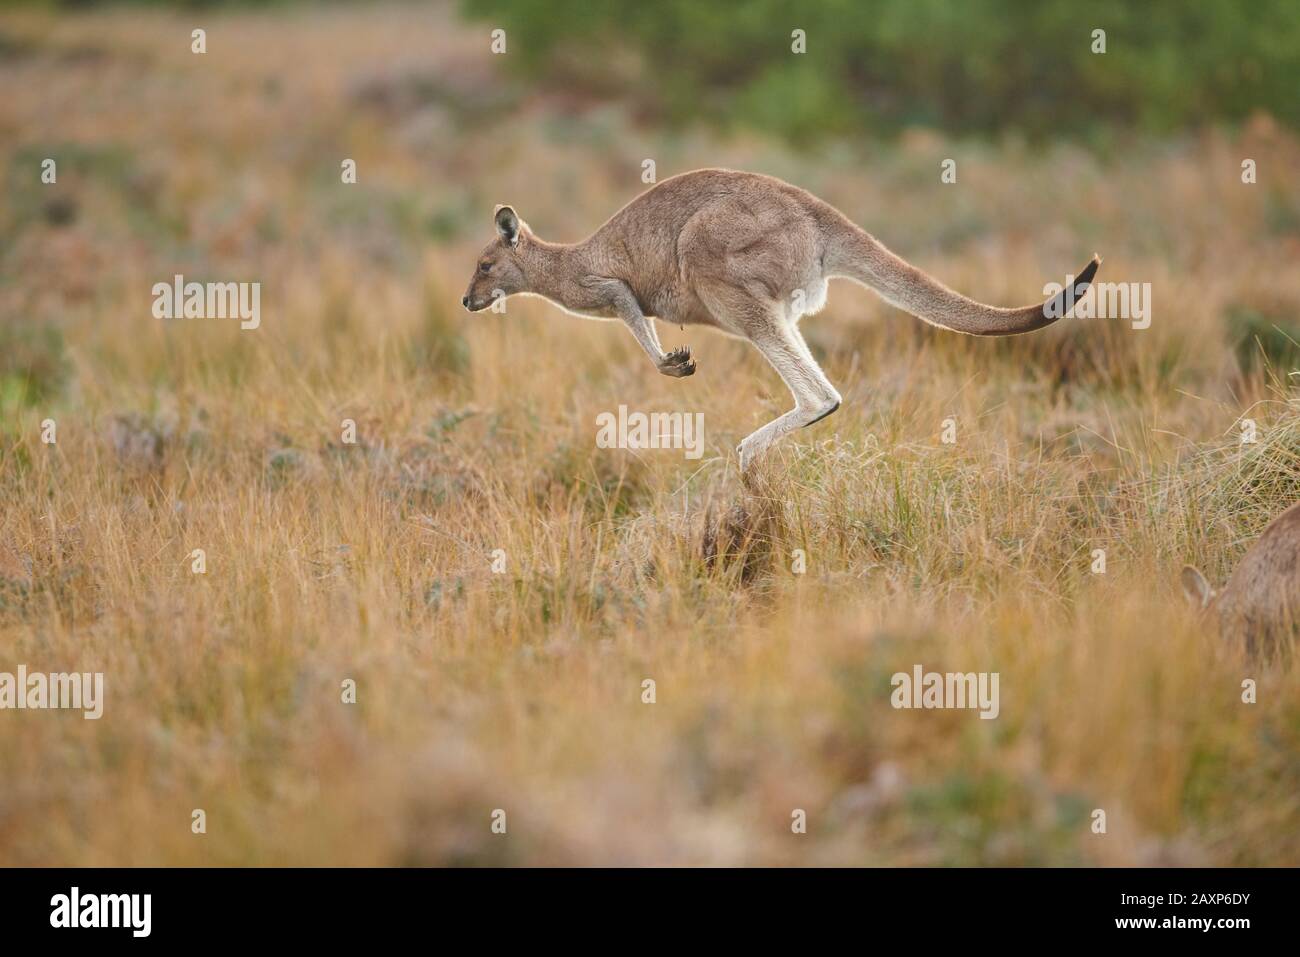 Kangaroo De L'Est (Macropus Giganteus), Meadow, Latéralement, Jump, Wilsons Promontory National Park, Victoria, Australie, Océanie Banque D'Images